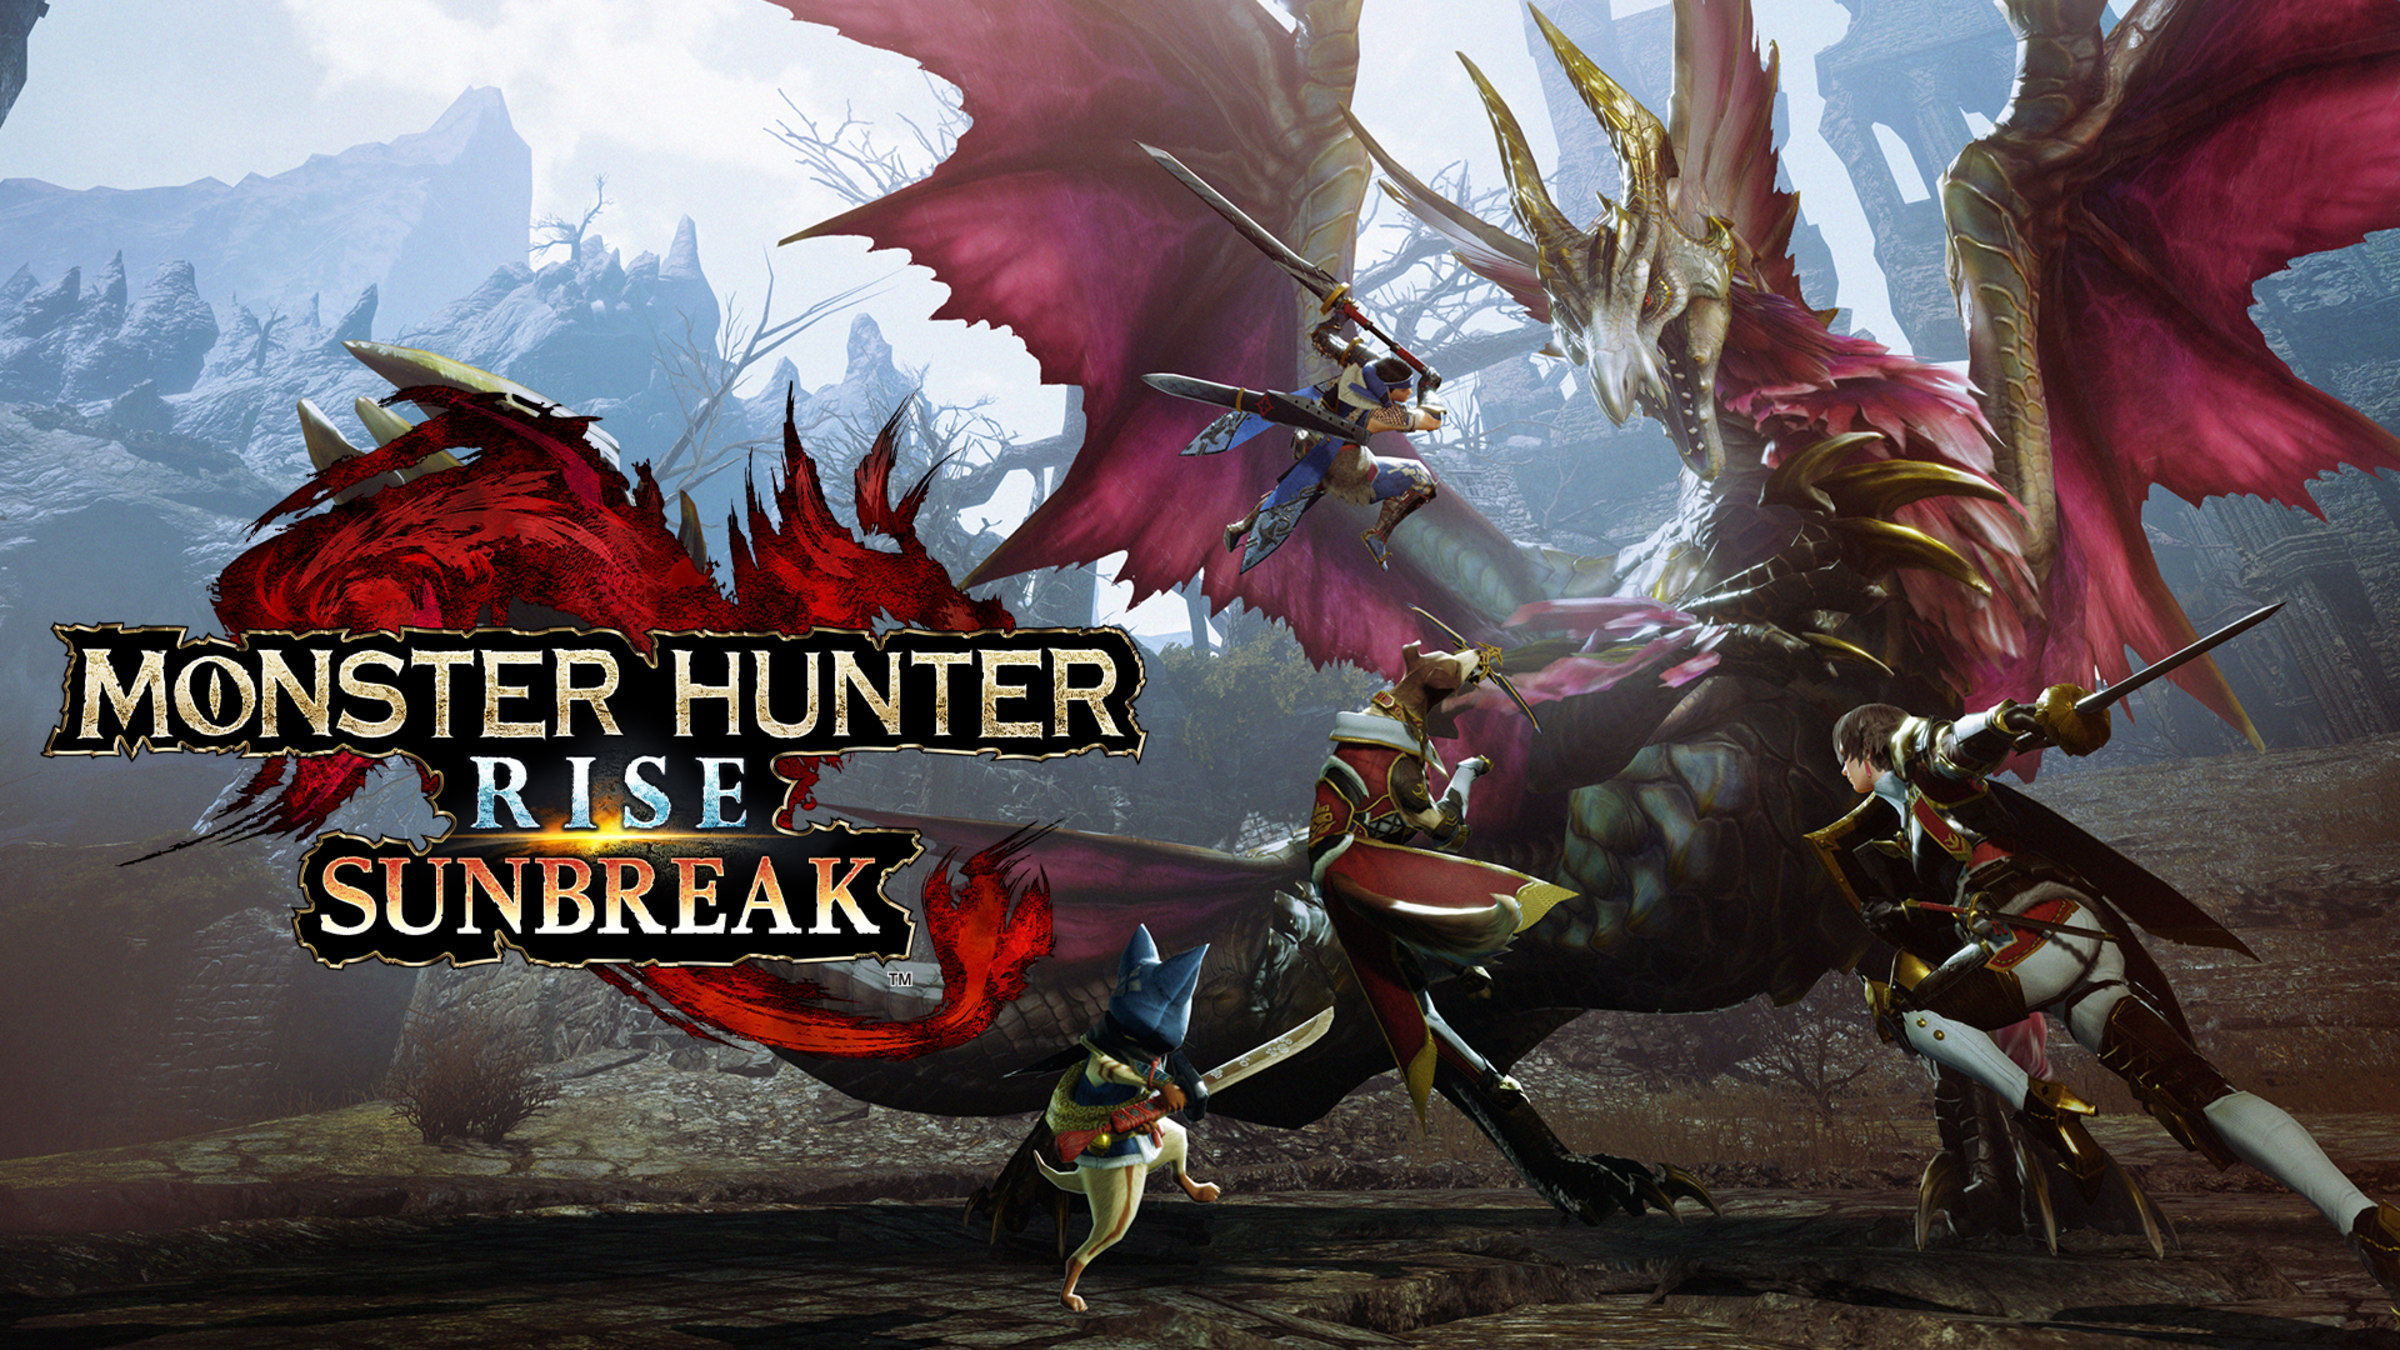 Every Monster Confirmed For Monster Hunter Rise: Sunbreak - Game